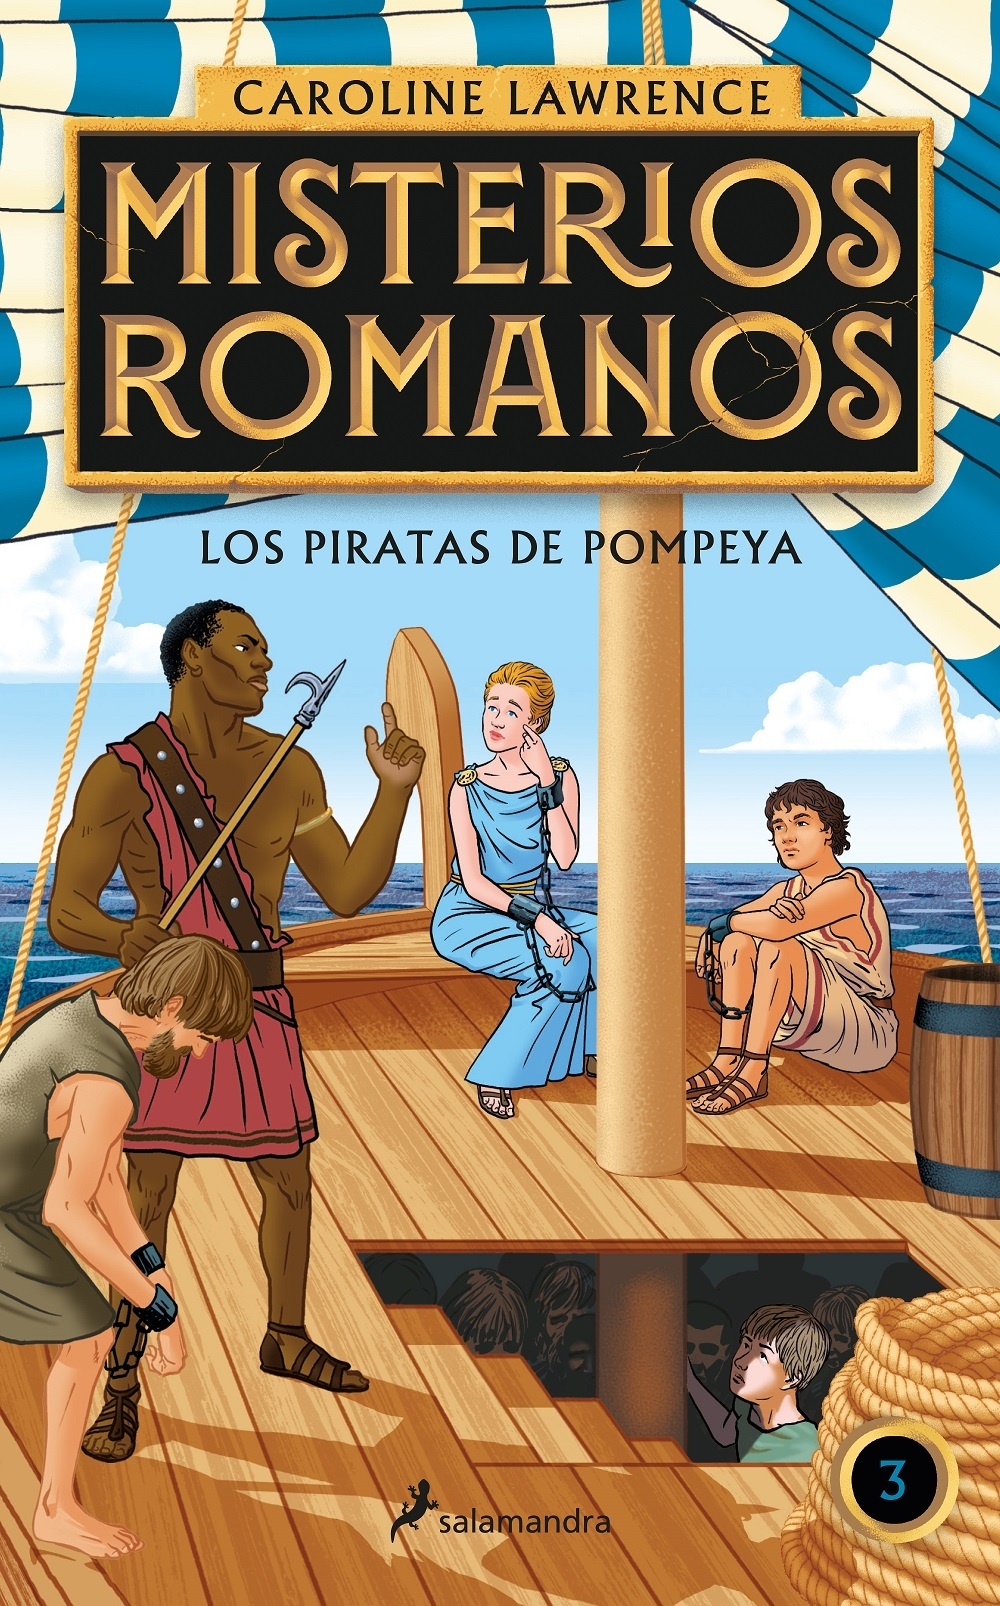 Piratas de Pompeya, Los "Misterios romanos III"